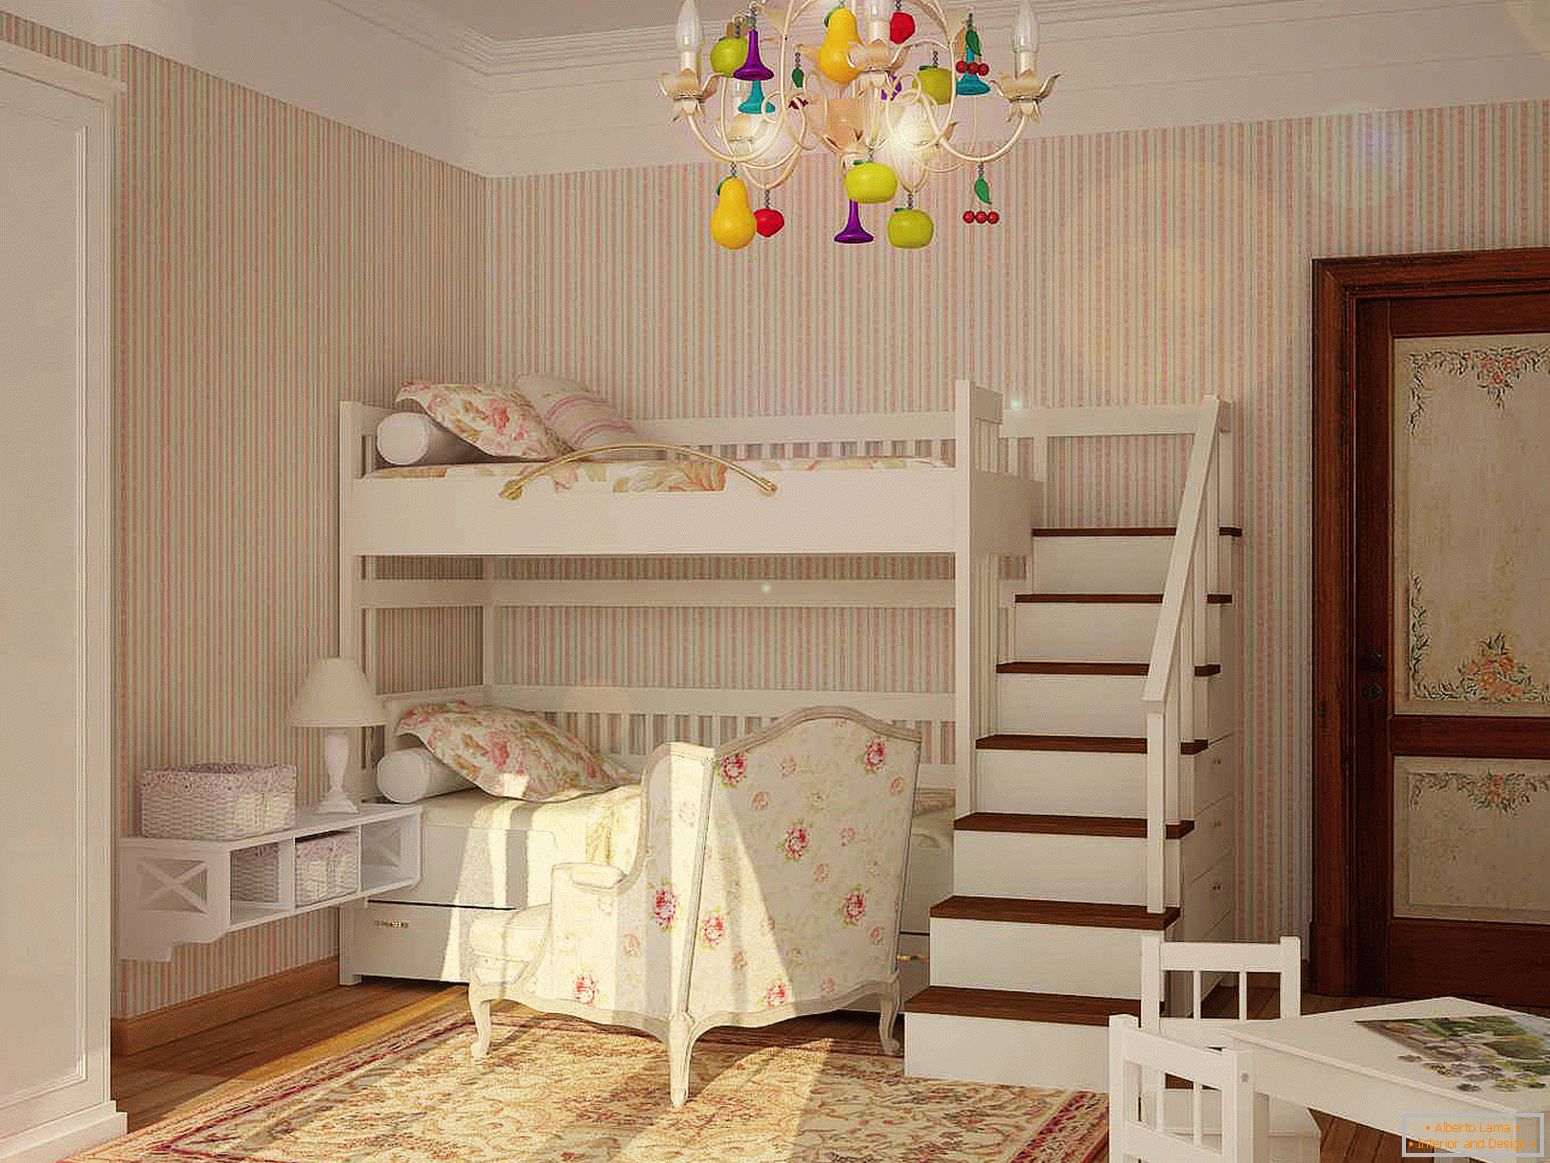 Design eines Kinderzimmers für zwei Kinder